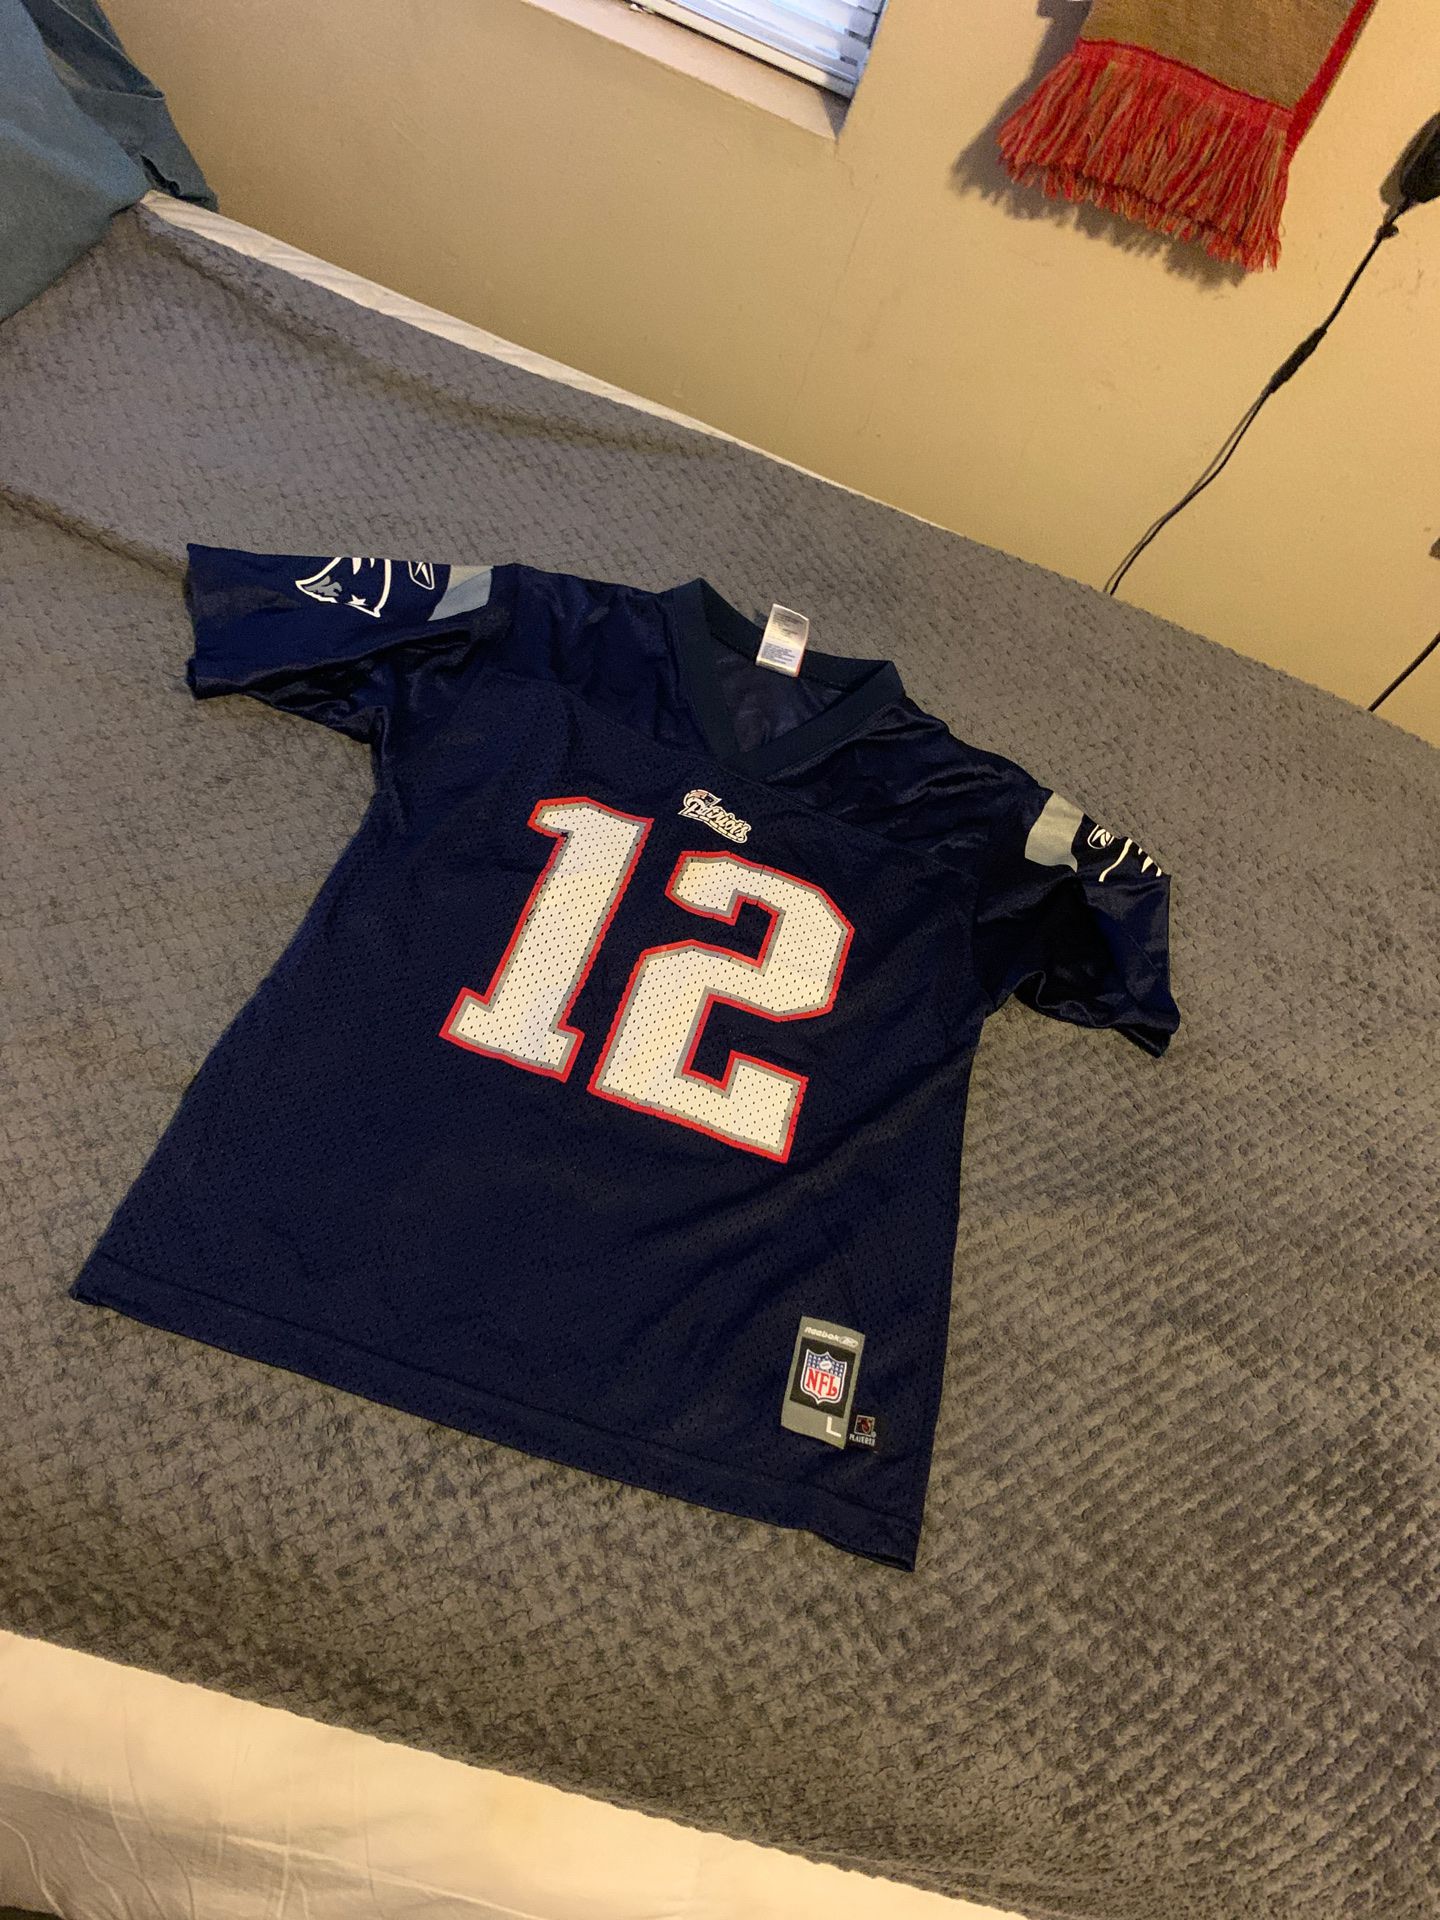 Tom Brady jersey